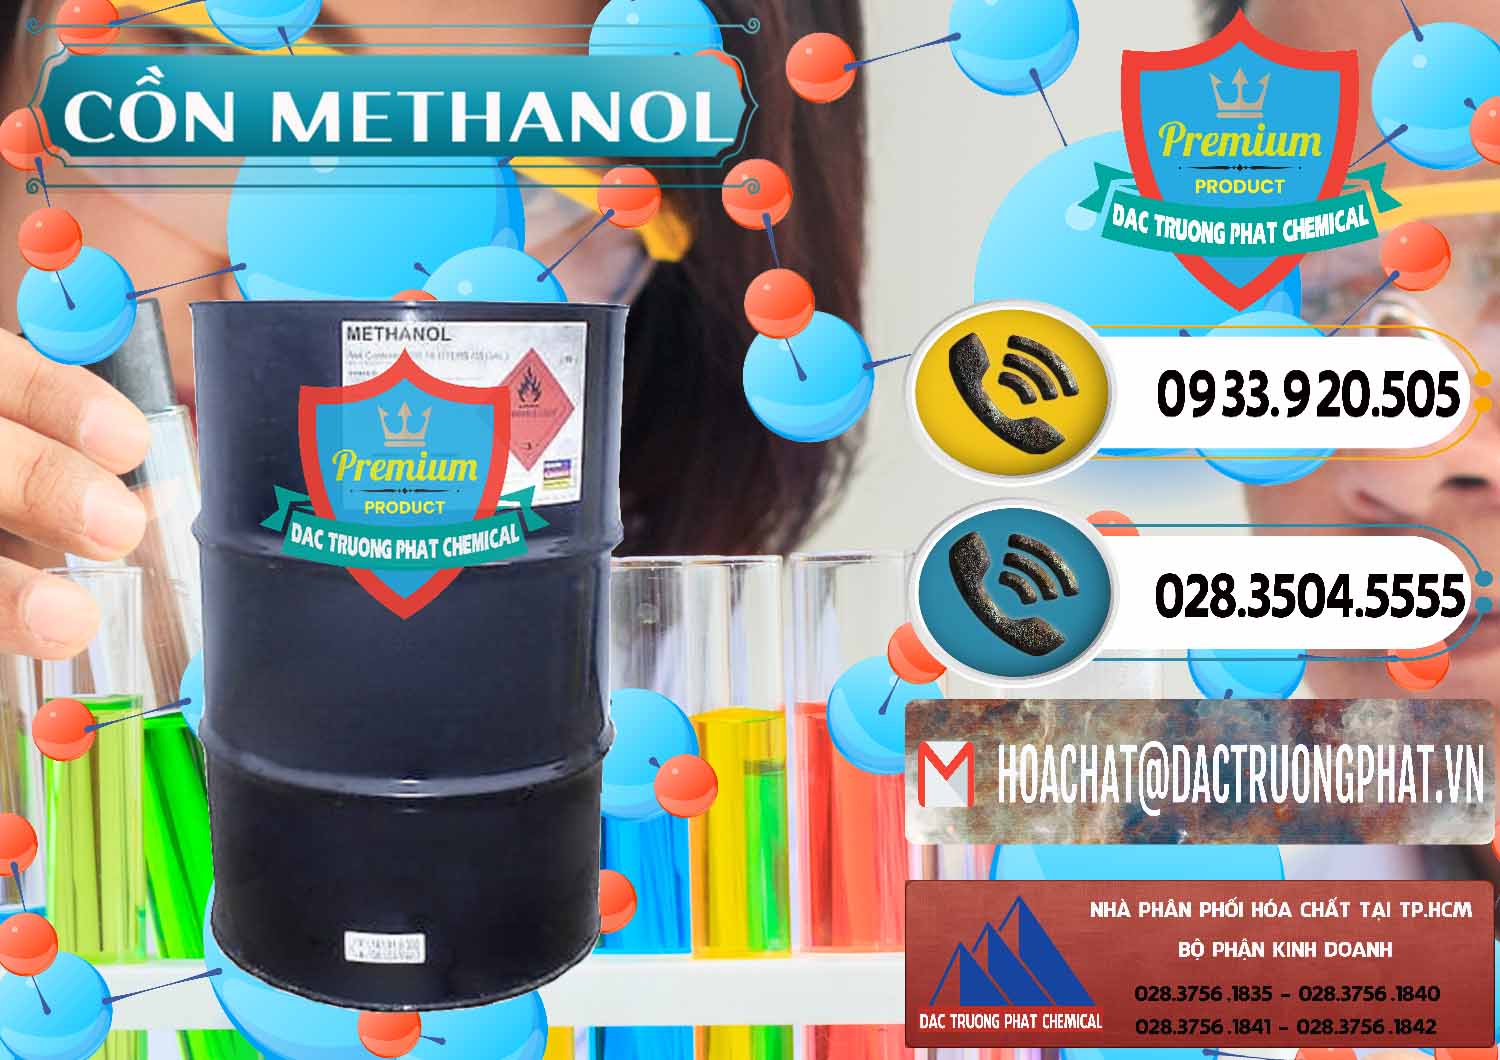 Cty bán ( cung ứng ) Cồn Methanol - Methyl Alcohol Mã Lai Malaysia - 0331 - Cung cấp ( phân phối ) hóa chất tại TP.HCM - hoachatdetnhuom.vn